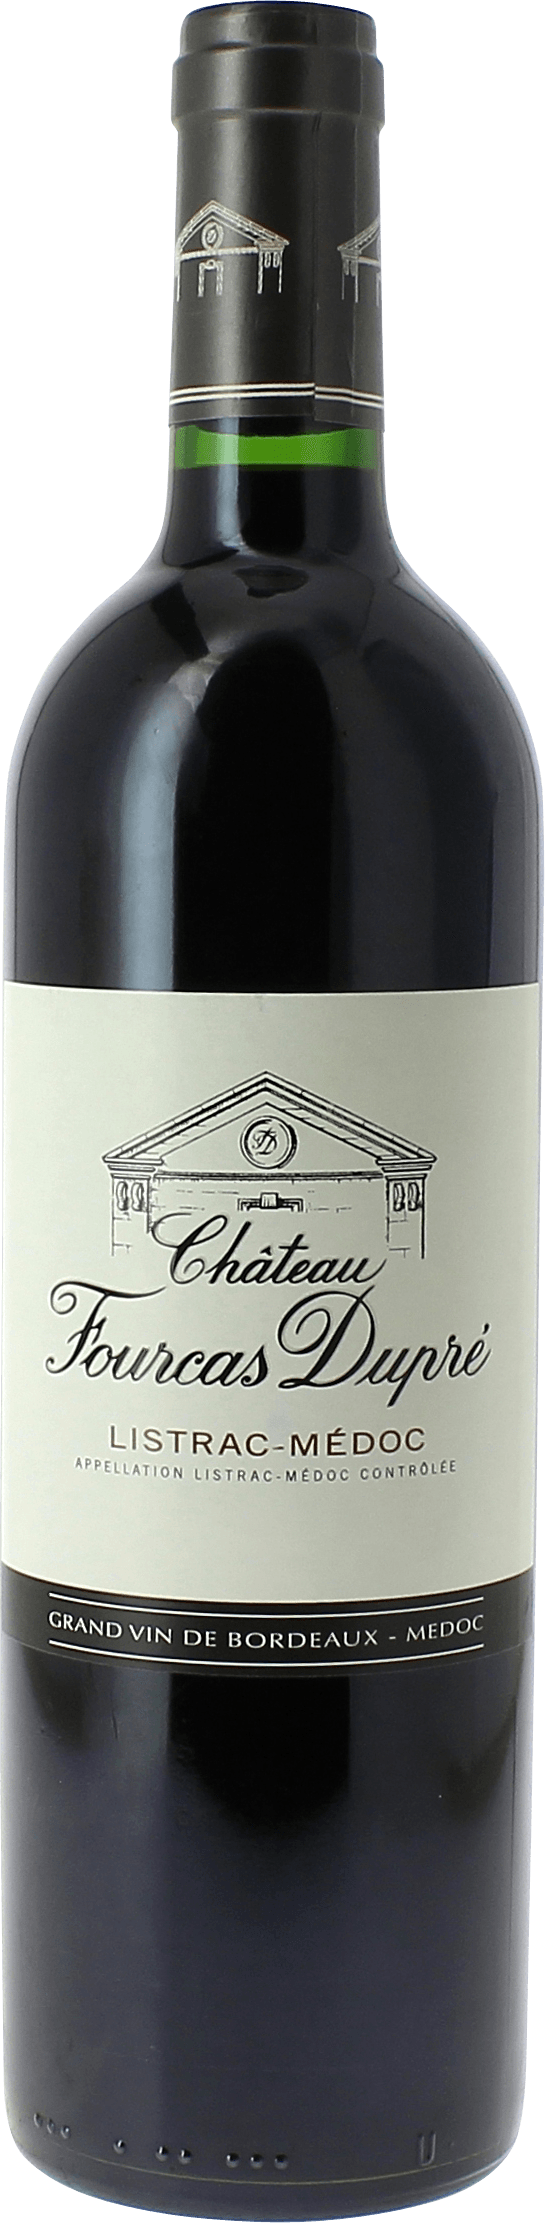 Fourcas dupre 2015 Cru Bourgeois Suprieur Listrac Mdoc, Slection Bordeaux Rouge